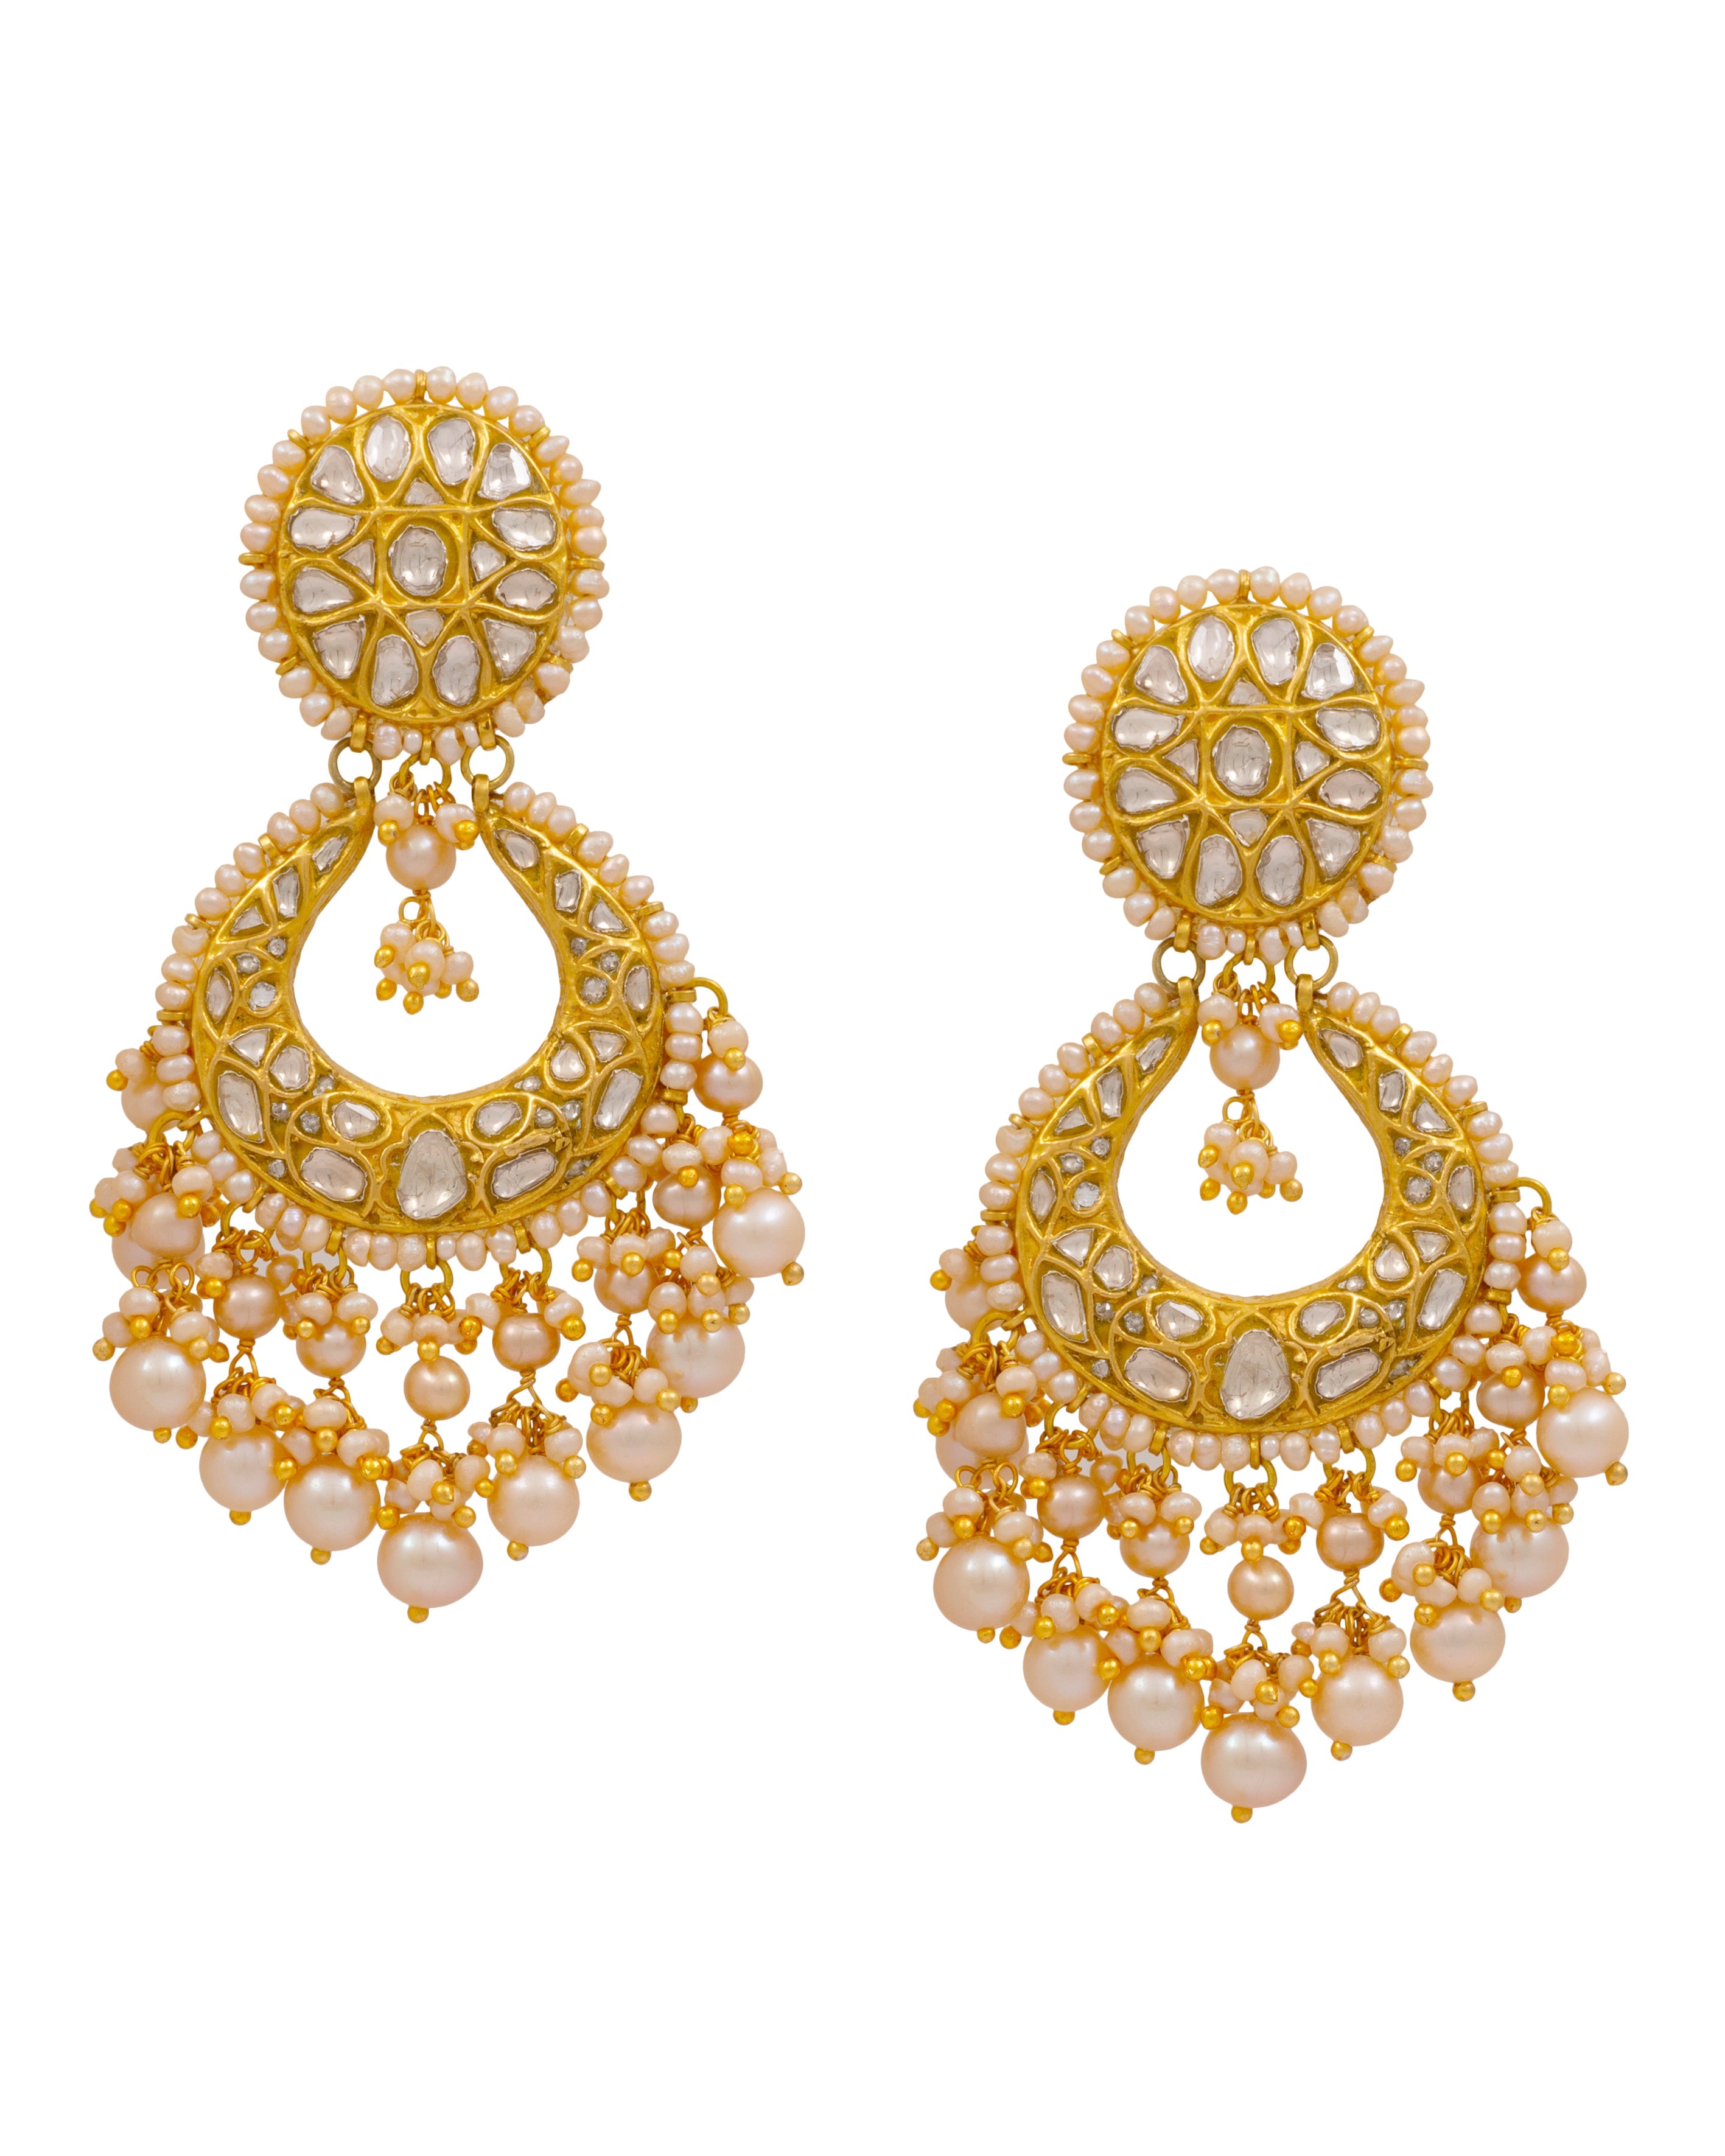 Earrings For Girls - Buy Earrings Designs For Girls online at Best Prices  in India | Flipkart.com